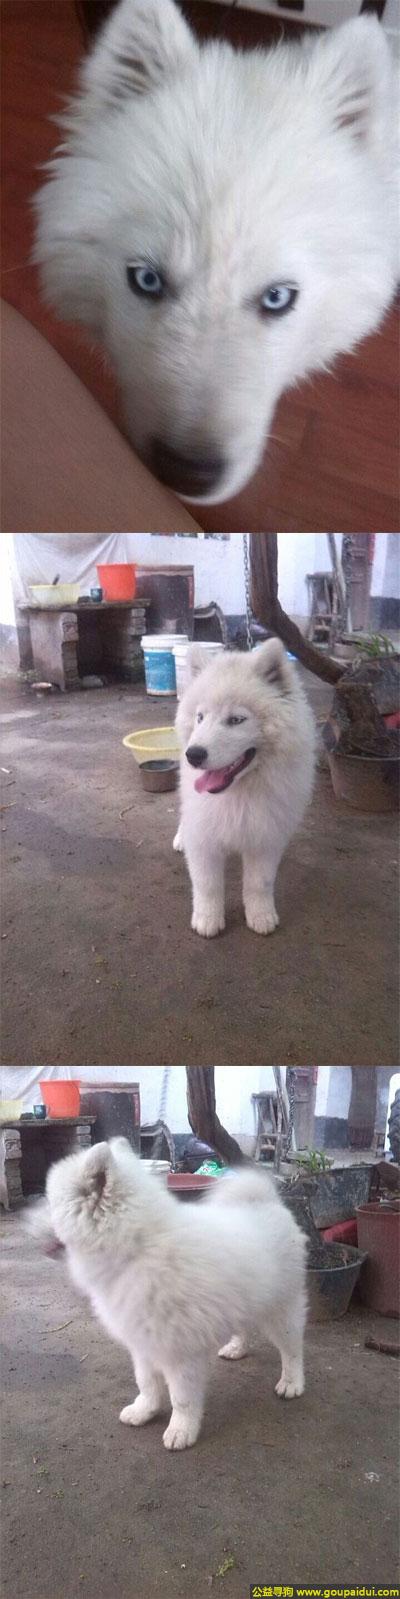 【南阳找狗】，南省南阳市师范学院寻狗白色的毛毛狗脖子里有一个红绳，它是一只非常可爱的宠物狗狗，希望它早日回家，不要变成流浪狗。